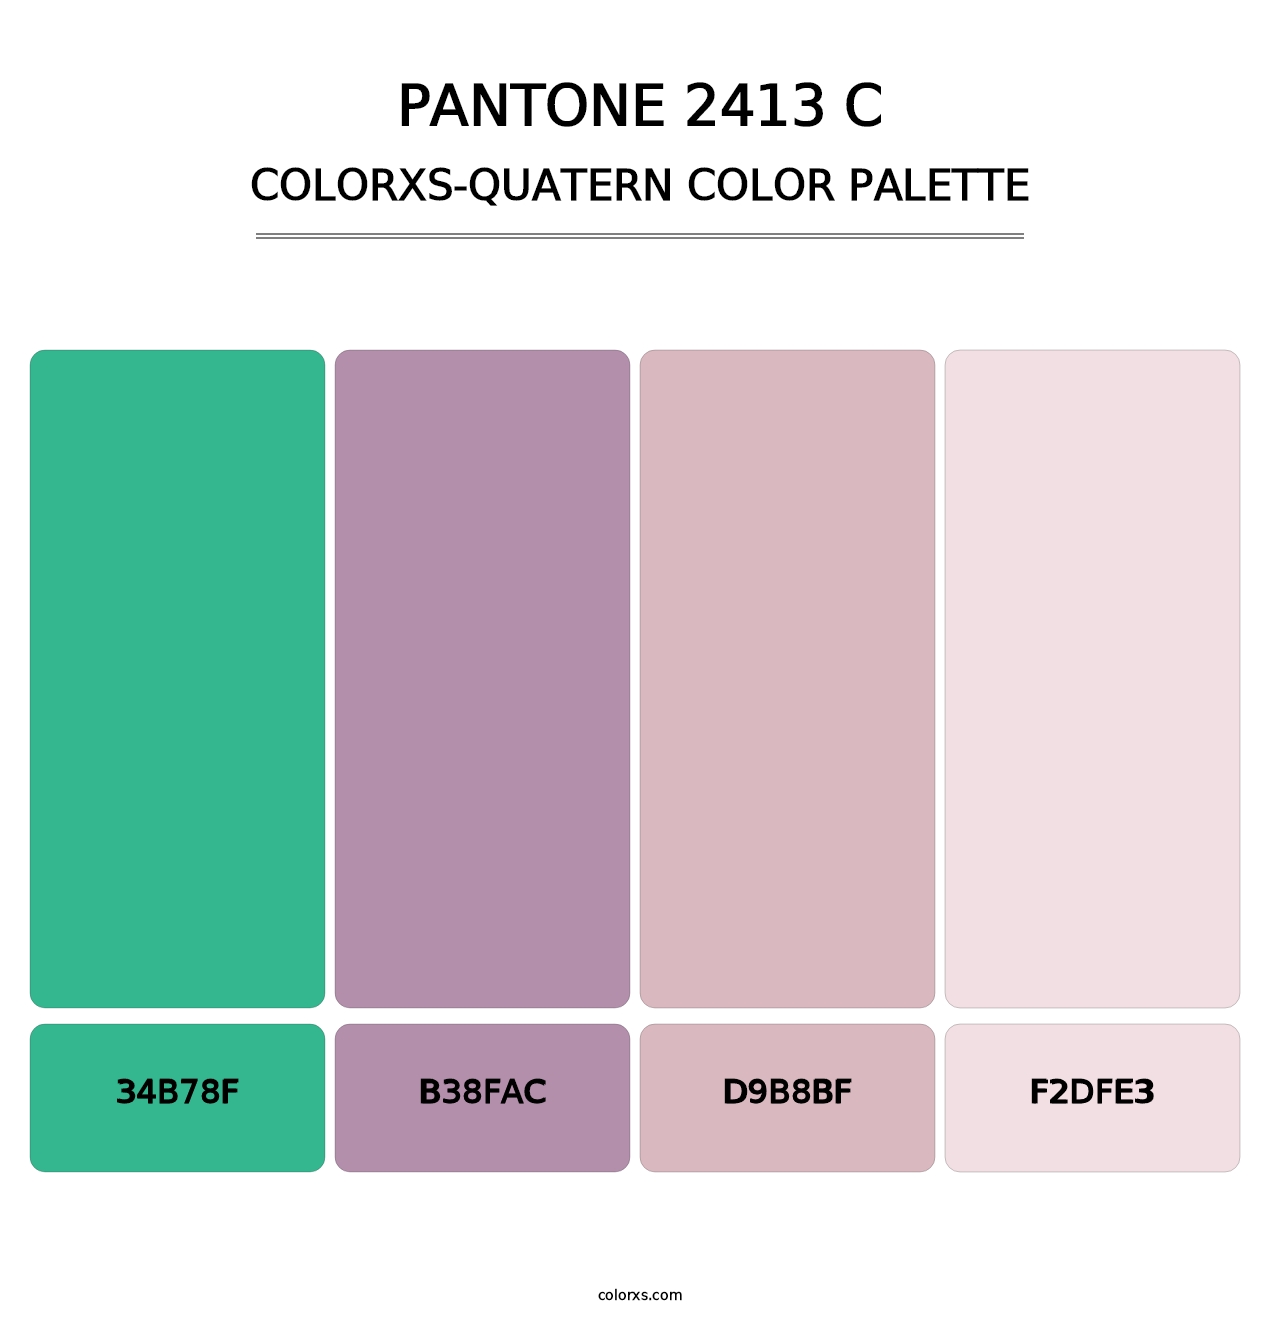 PANTONE 2413 C - Colorxs Quatern Palette